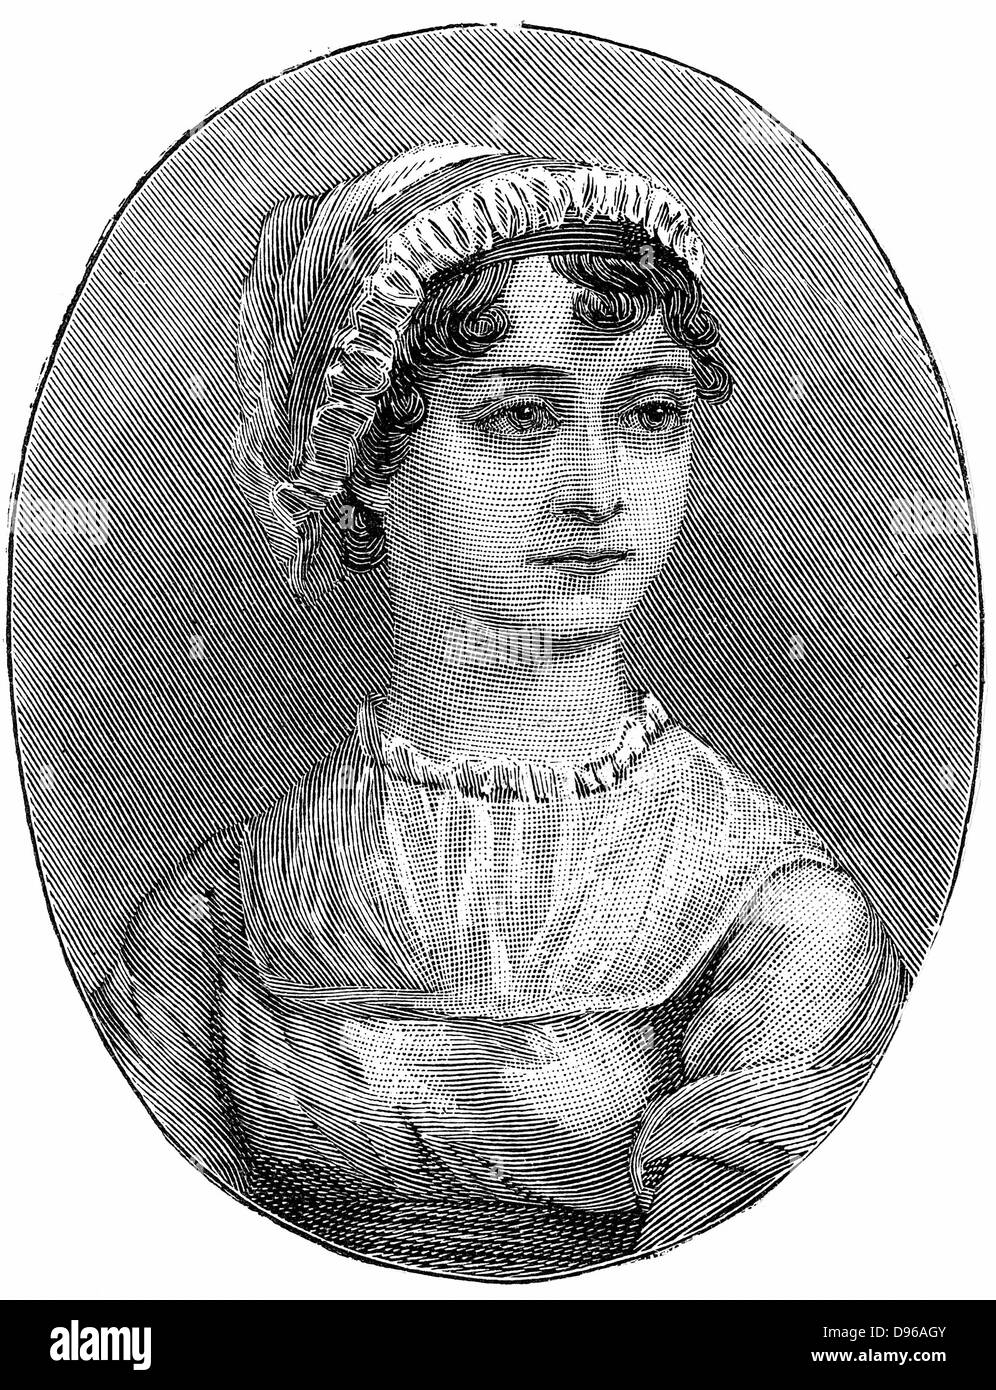 Jane Austen (1775-1817) englischer Schriftsteller für Ense und Sensibilität" der sechs großen Romane erinnert, "Stolz und Vorurteil', 'Mansfield Park', 'Emma', 'Überzeugung' und 'Northanger Abbey". Gravur. Stockfoto